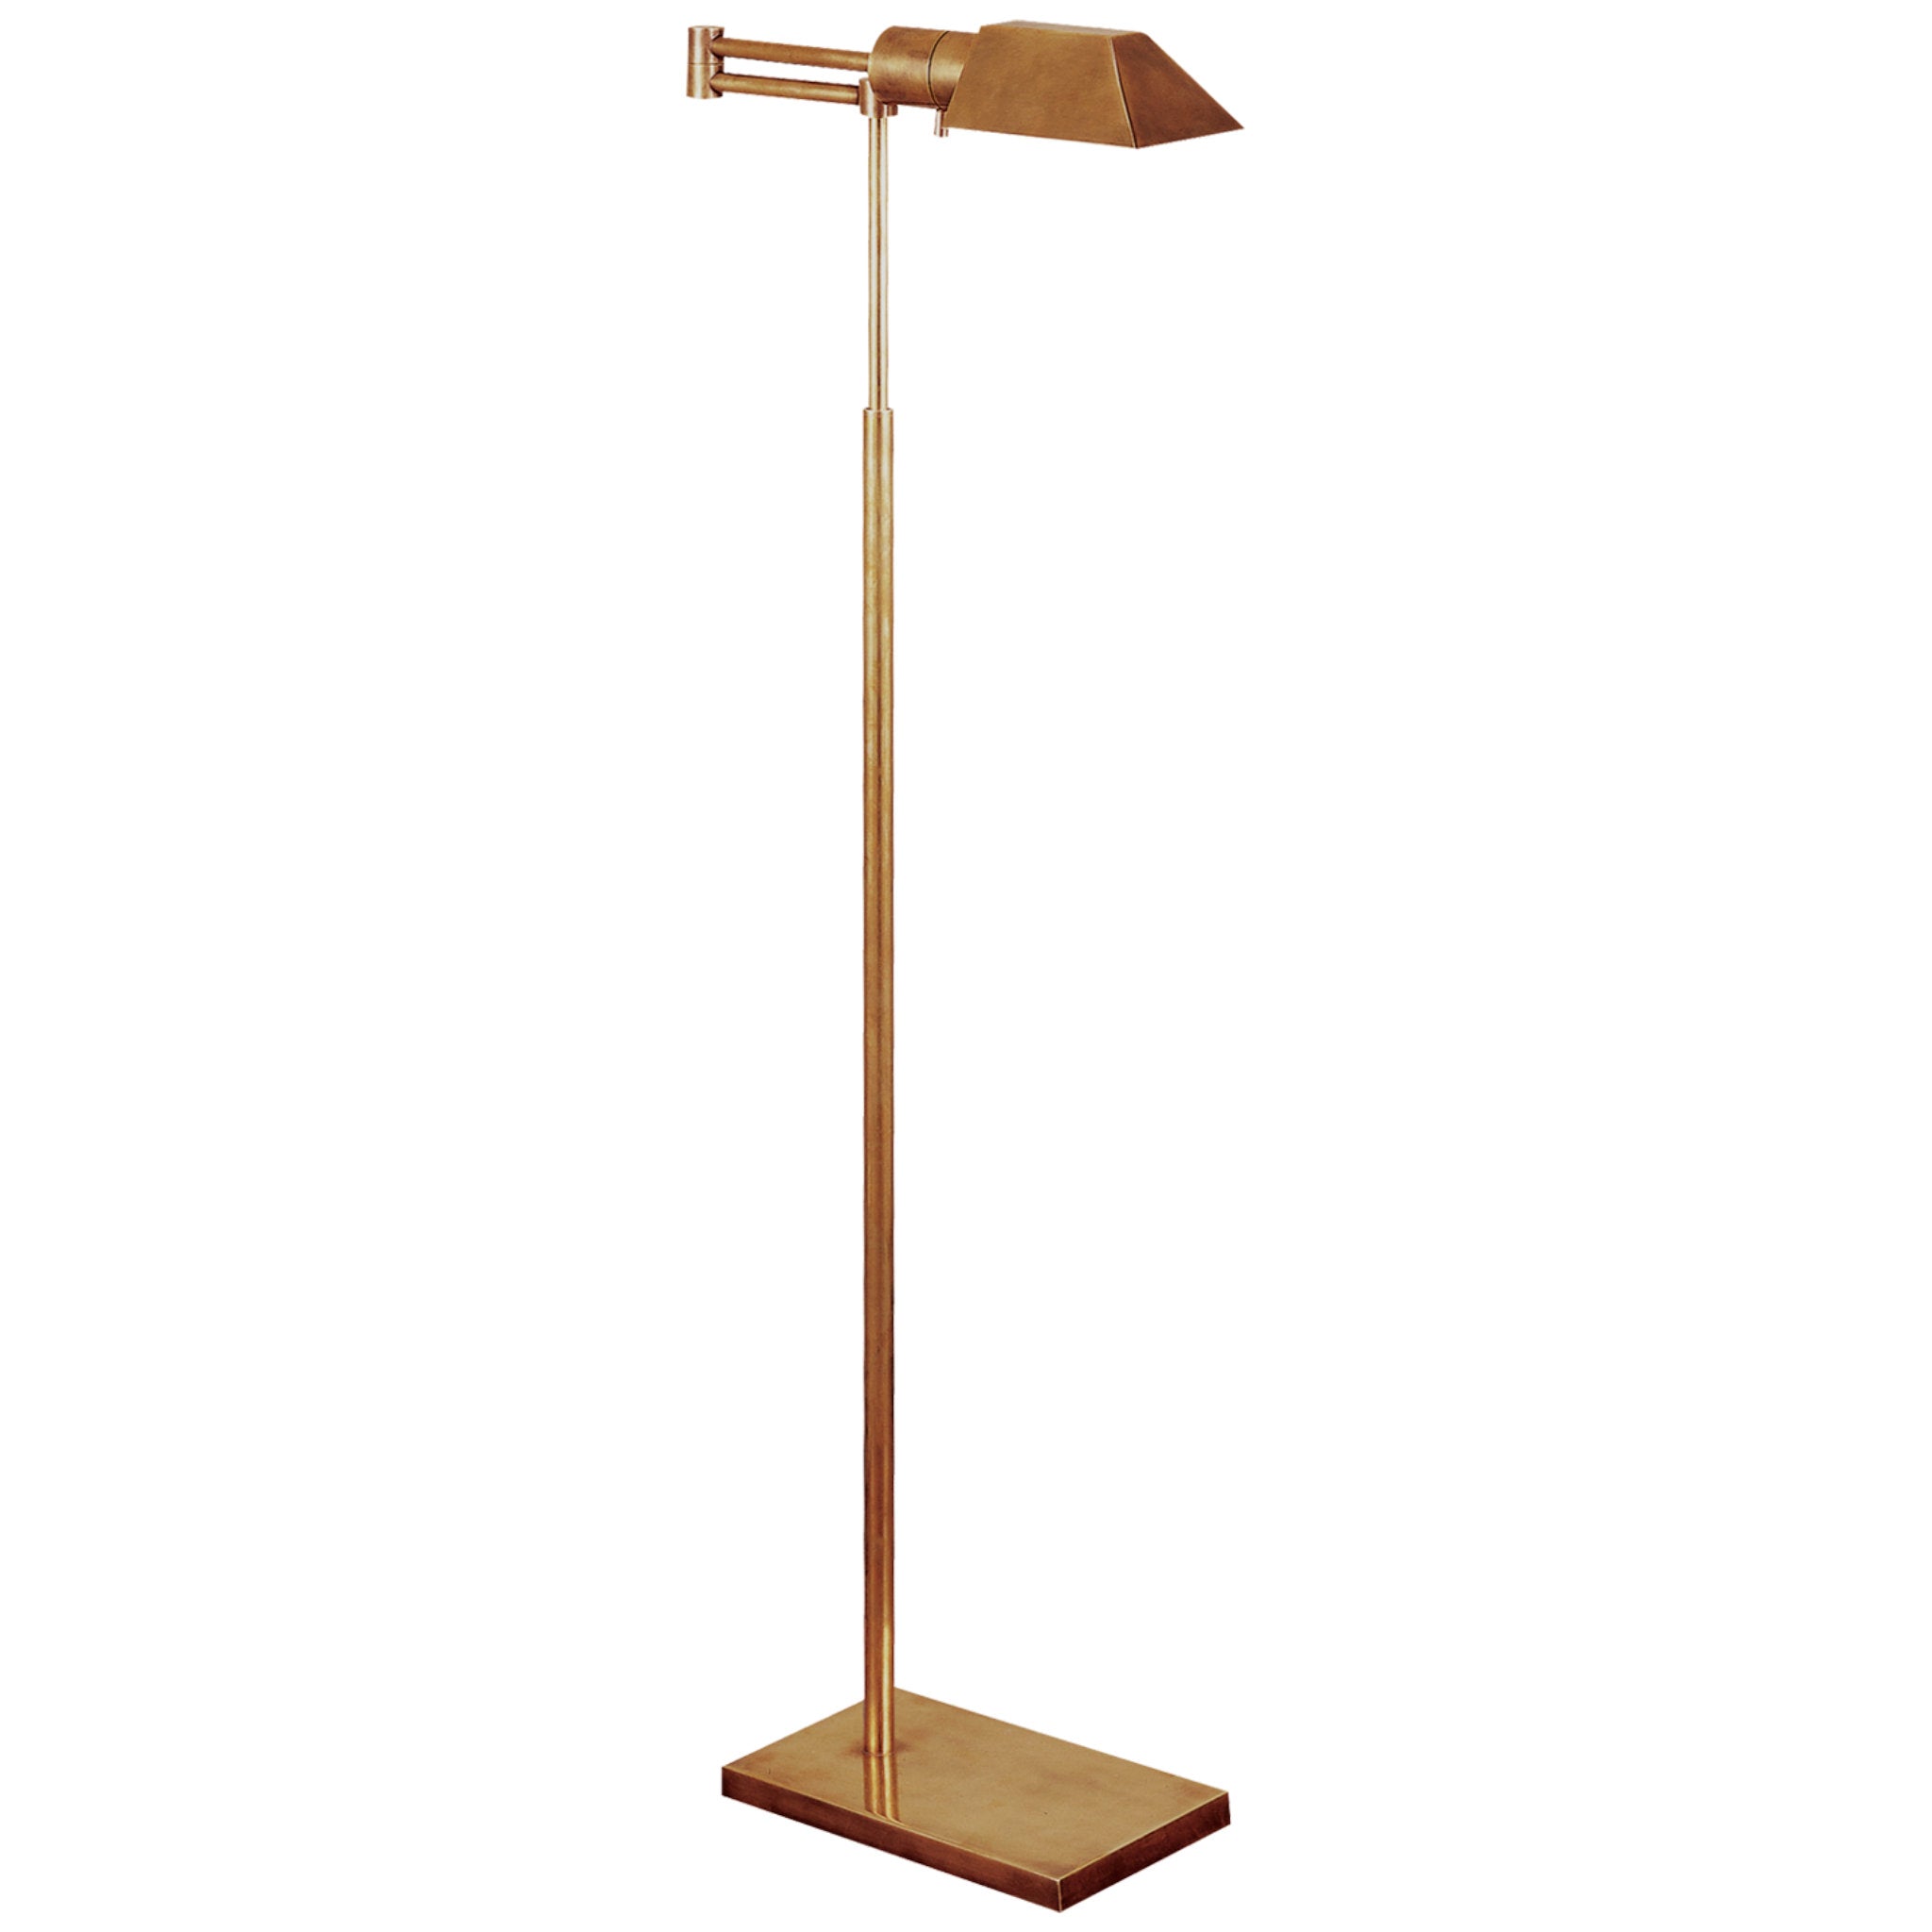 Visual Comfort Studio Swing Arm Floor Lamp in Hand-Rubbed Antique Brass